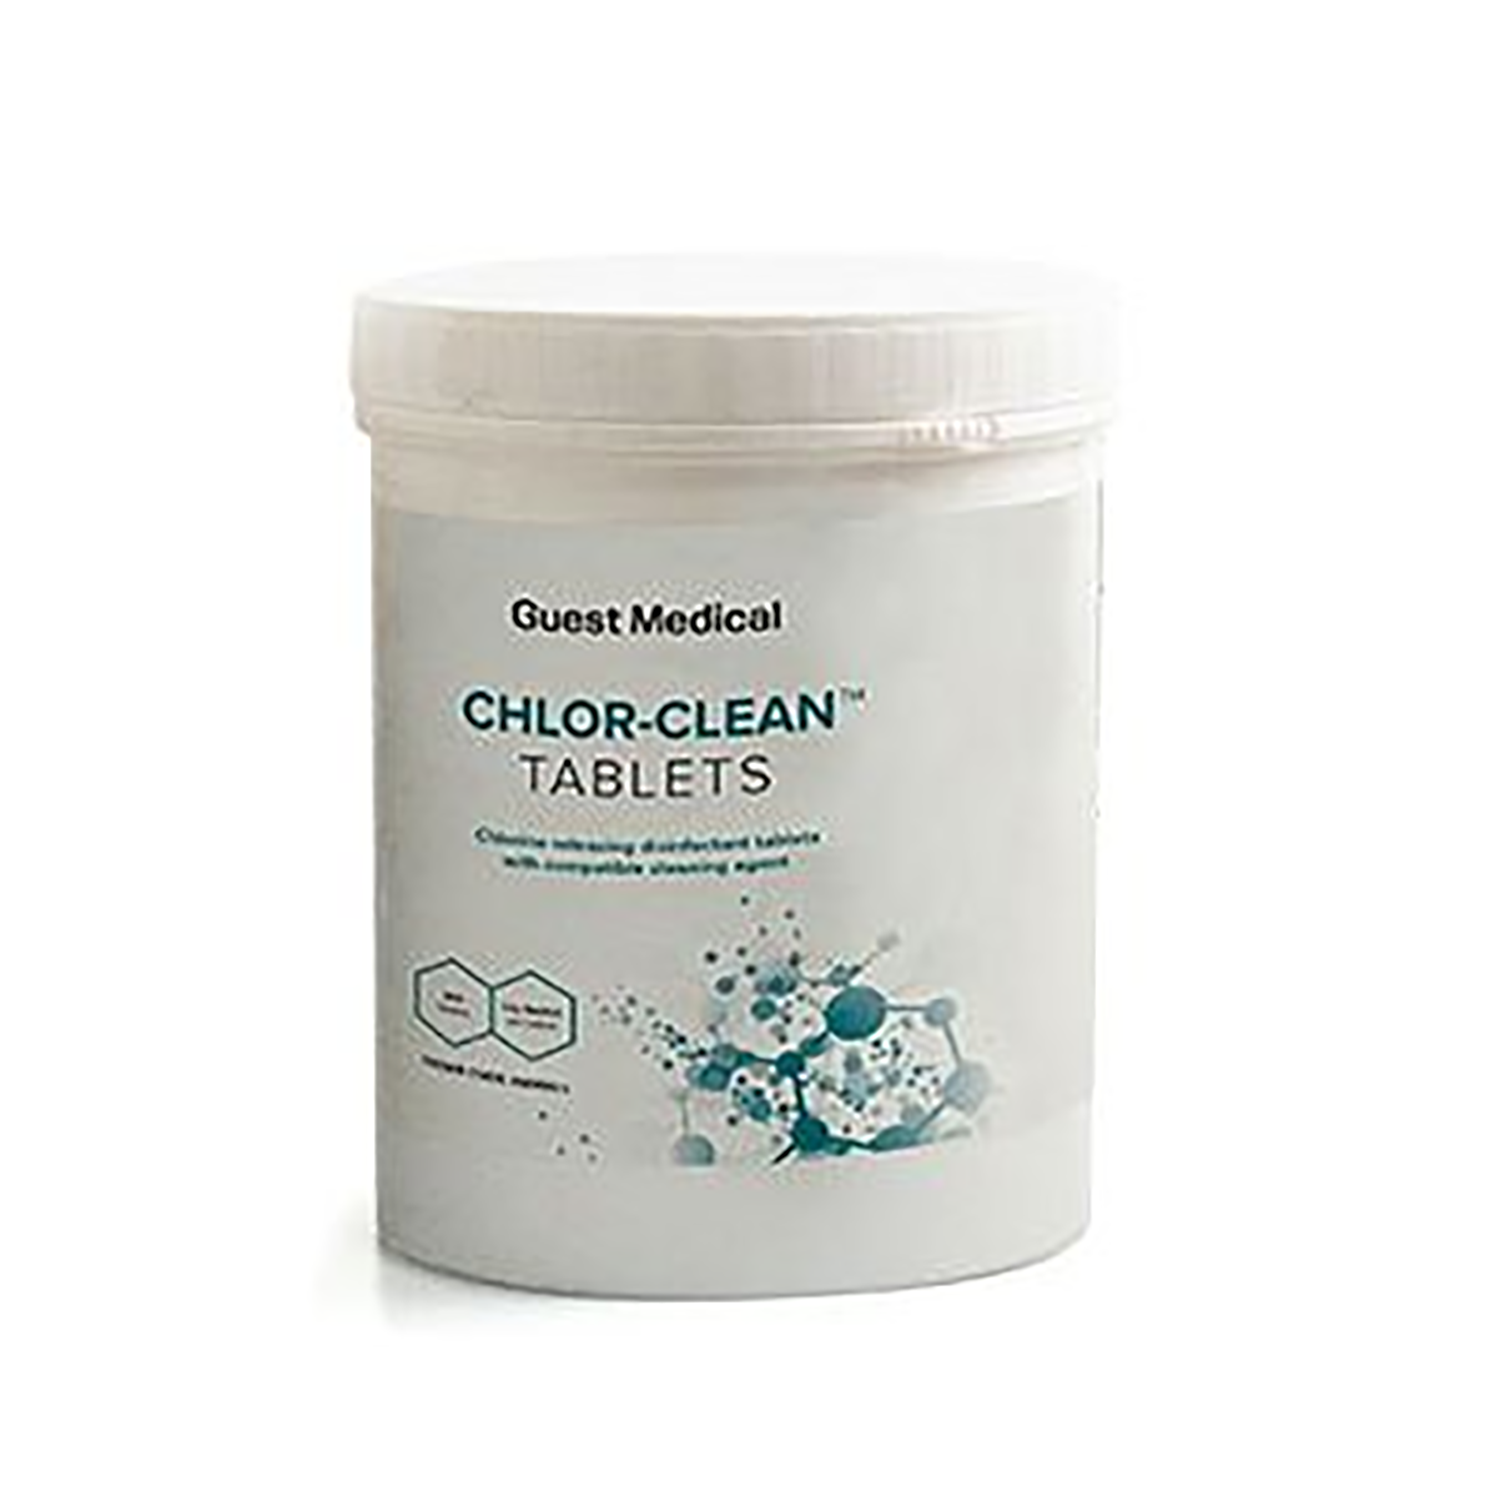 Chlor-Clean Detergent Sanitiser Tablets | Pack of 200